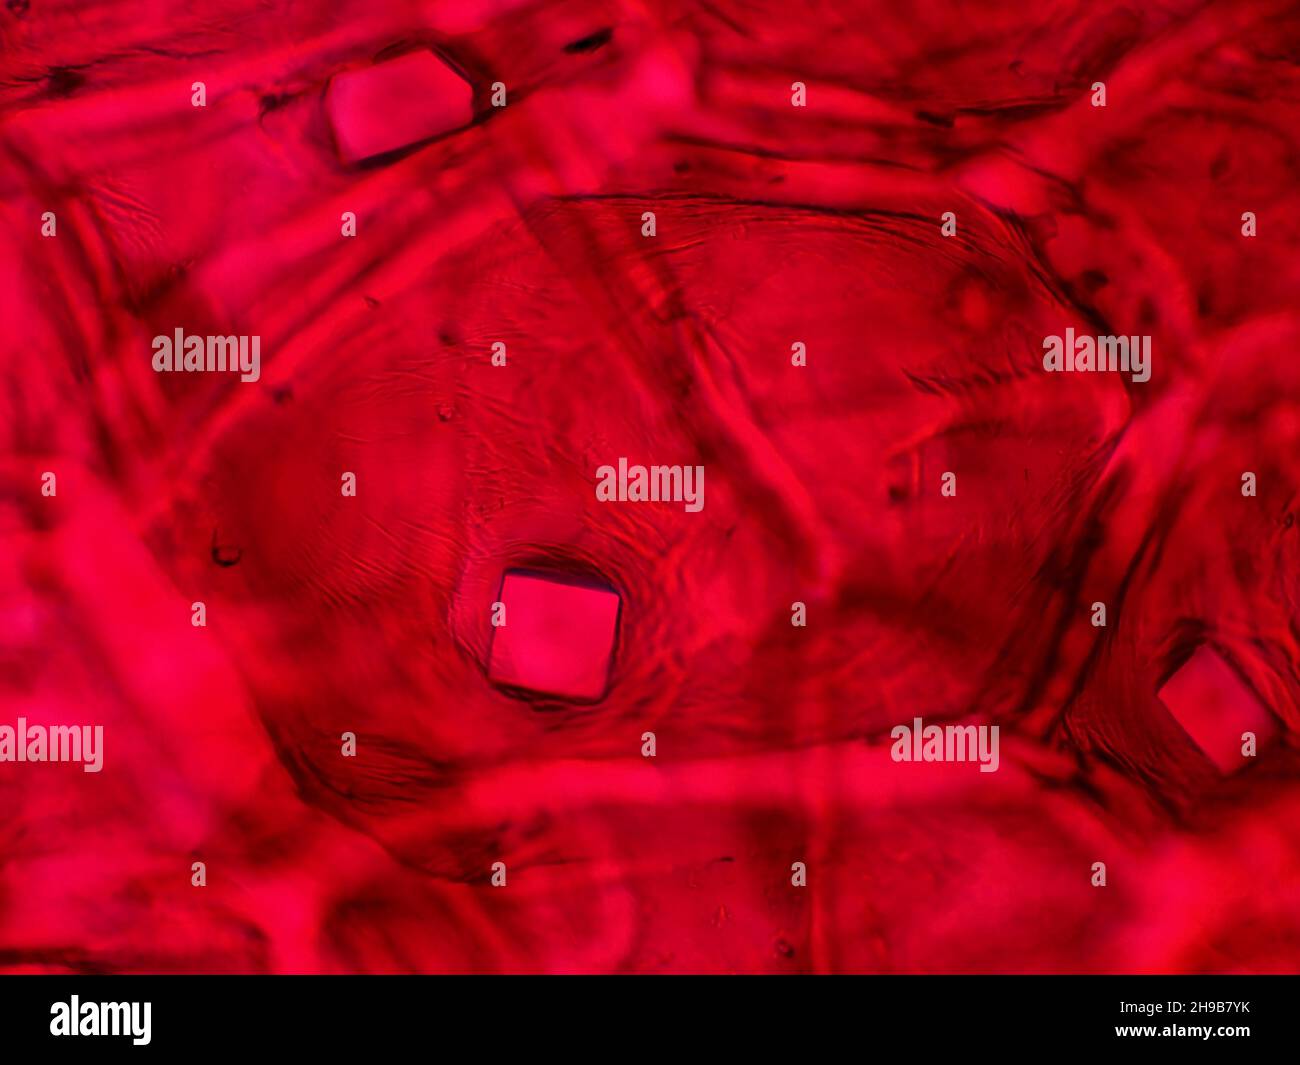 Buccia di cipolla rossa con cristalli di ossalato al microscopio, campo di vista orizzontale è di circa 0,24mm Foto Stock